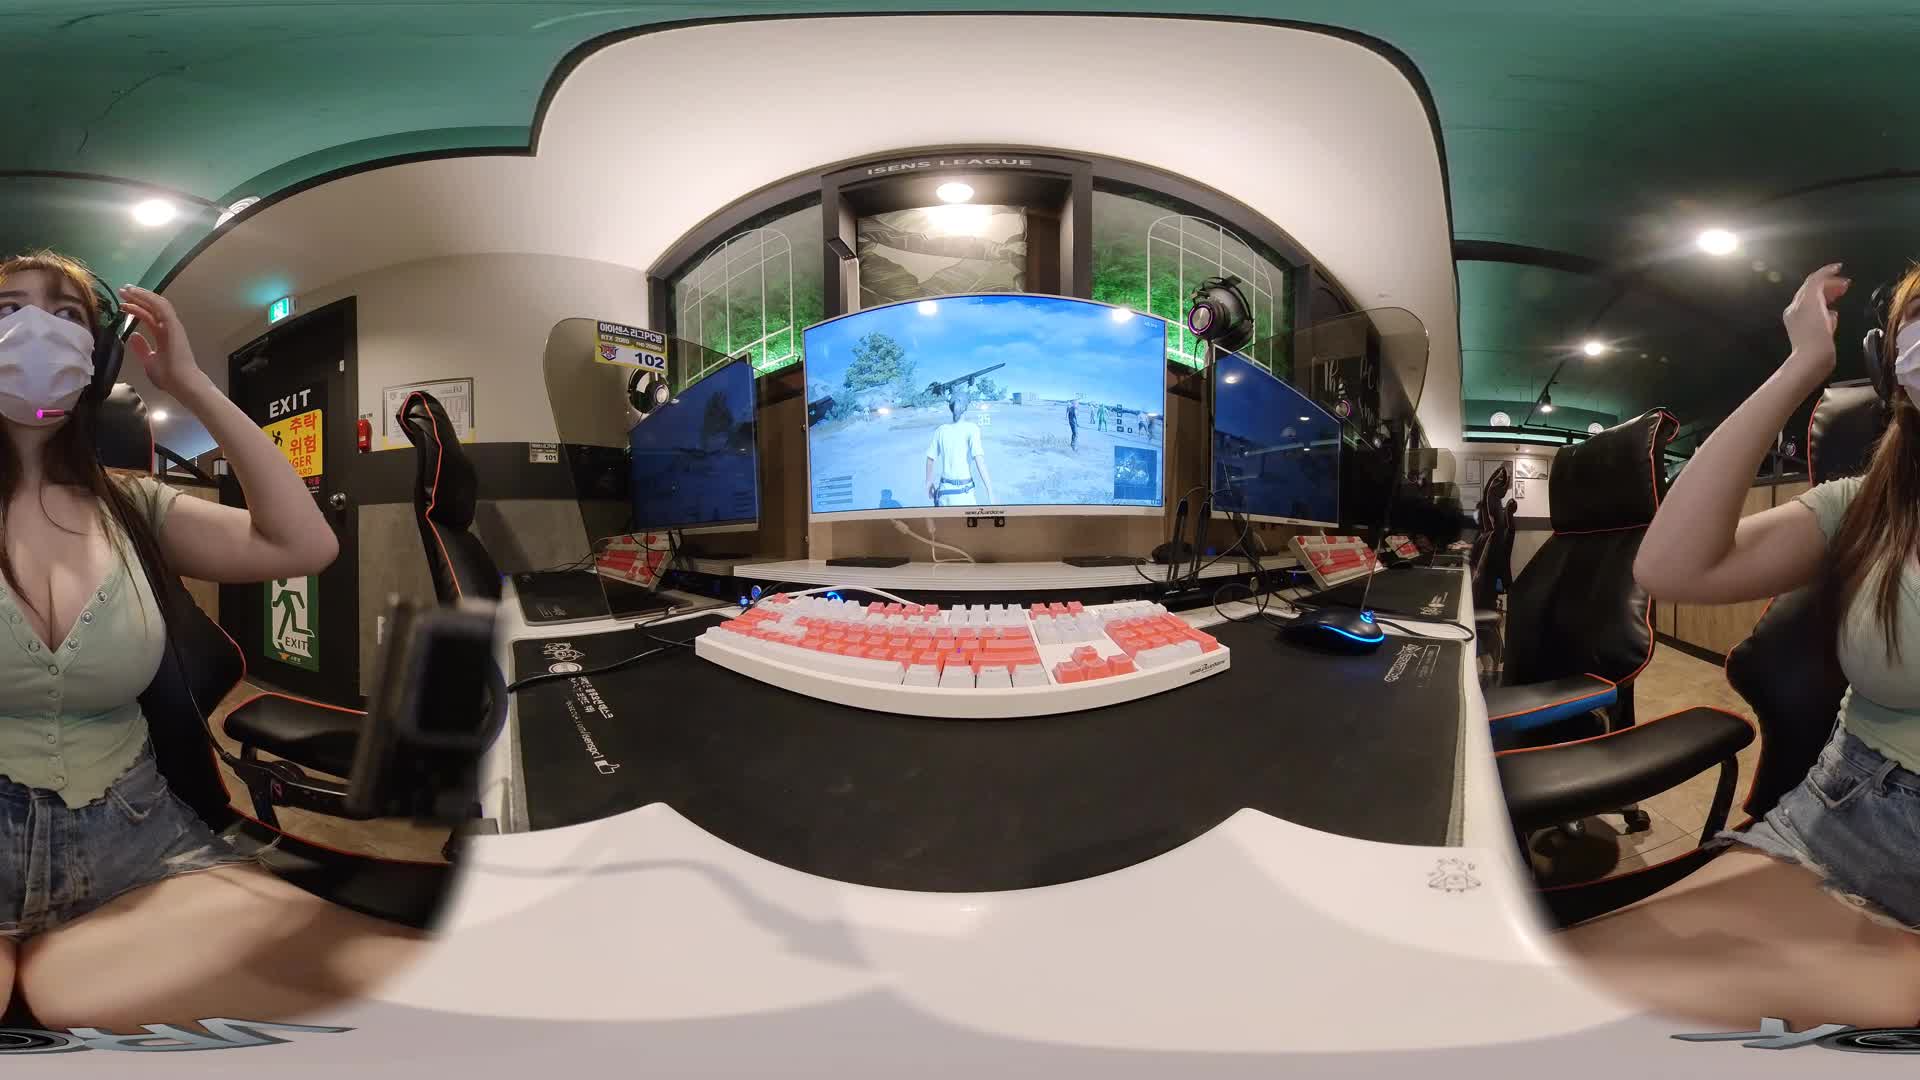 VR360 5.7K _ 피시방에서 배틀그라운드 치킨!! VR360도로 볼래요 _BATTLEGROUND VR360 PLAYING _ PUBG _VROK _ 배그